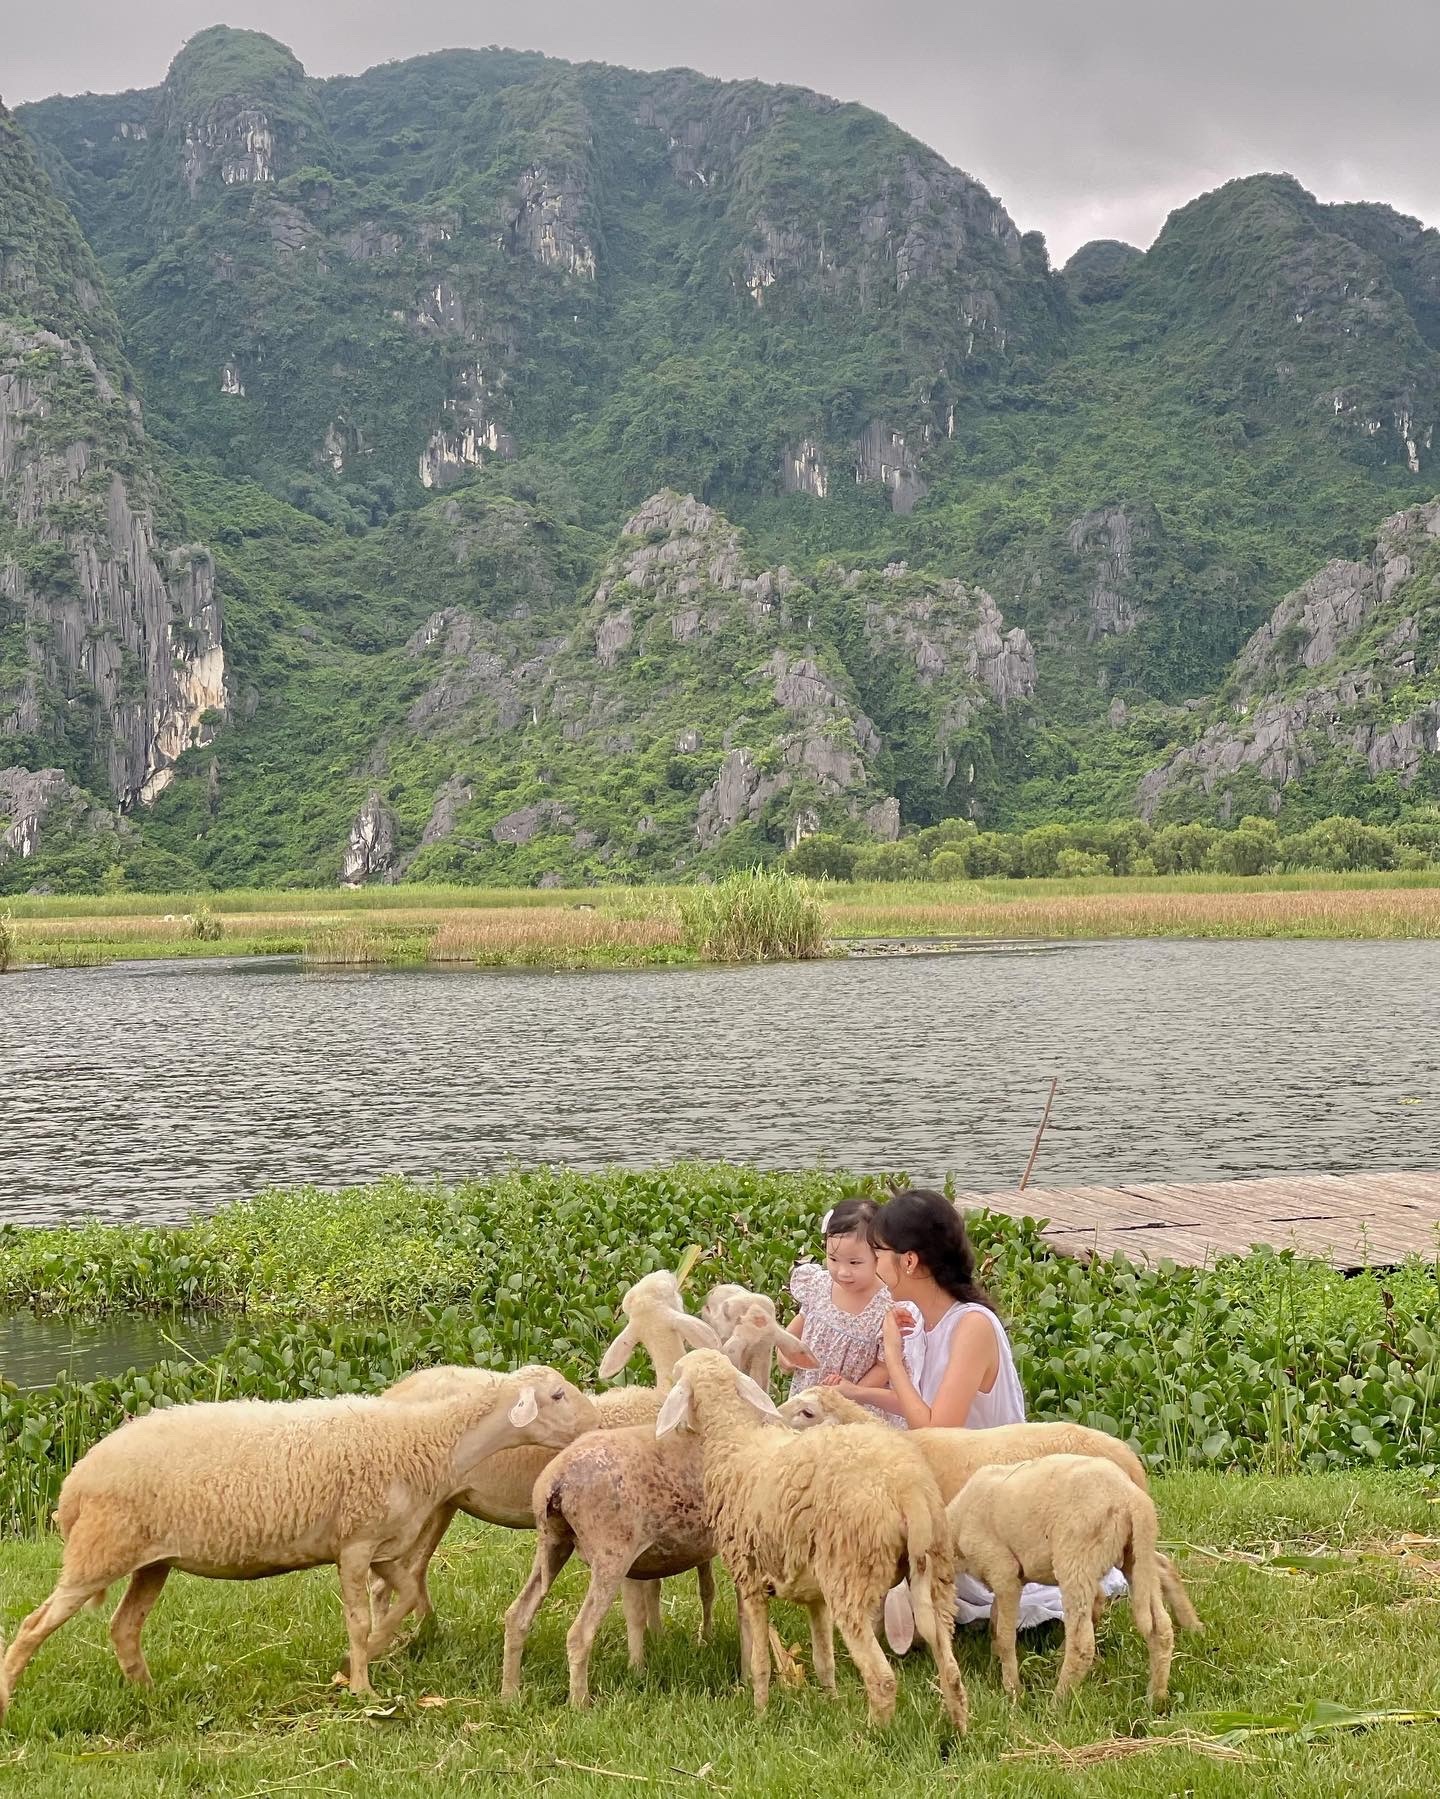 Say mê đồng cừu như khu vườn cổ tích ở Ninh Bình  